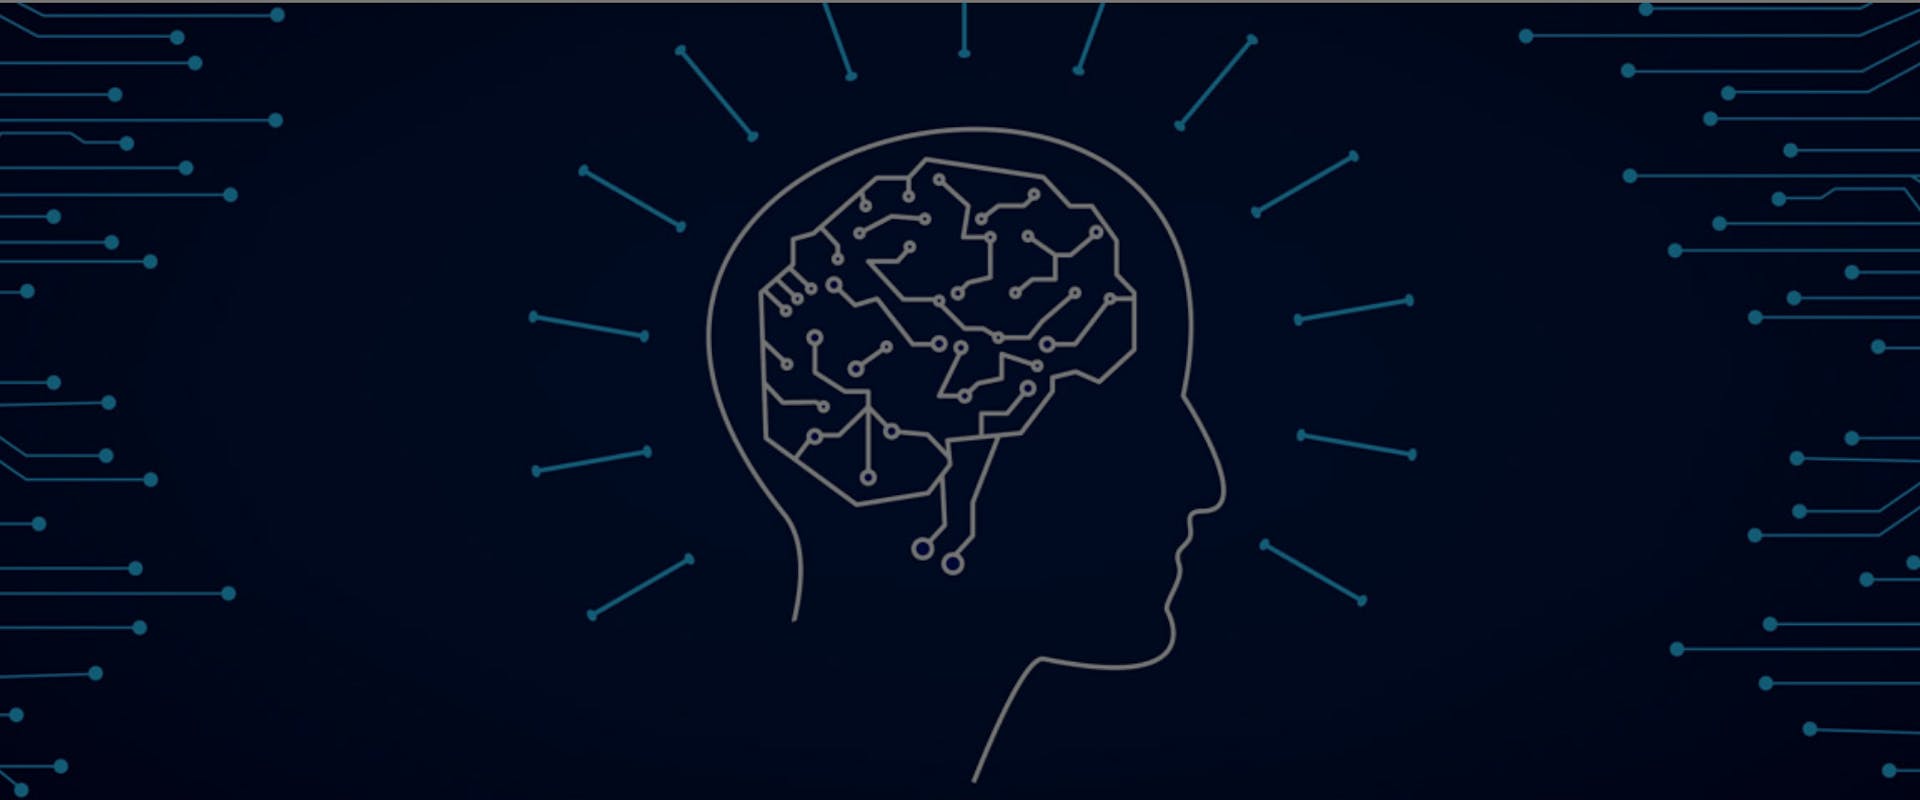 Immagine stilizzata di una persona di profilo e del suo cervello, rappresentato tramite una serie di linee e punti interconnessi tra loro dando l'idea di un insieme di reti connesse.